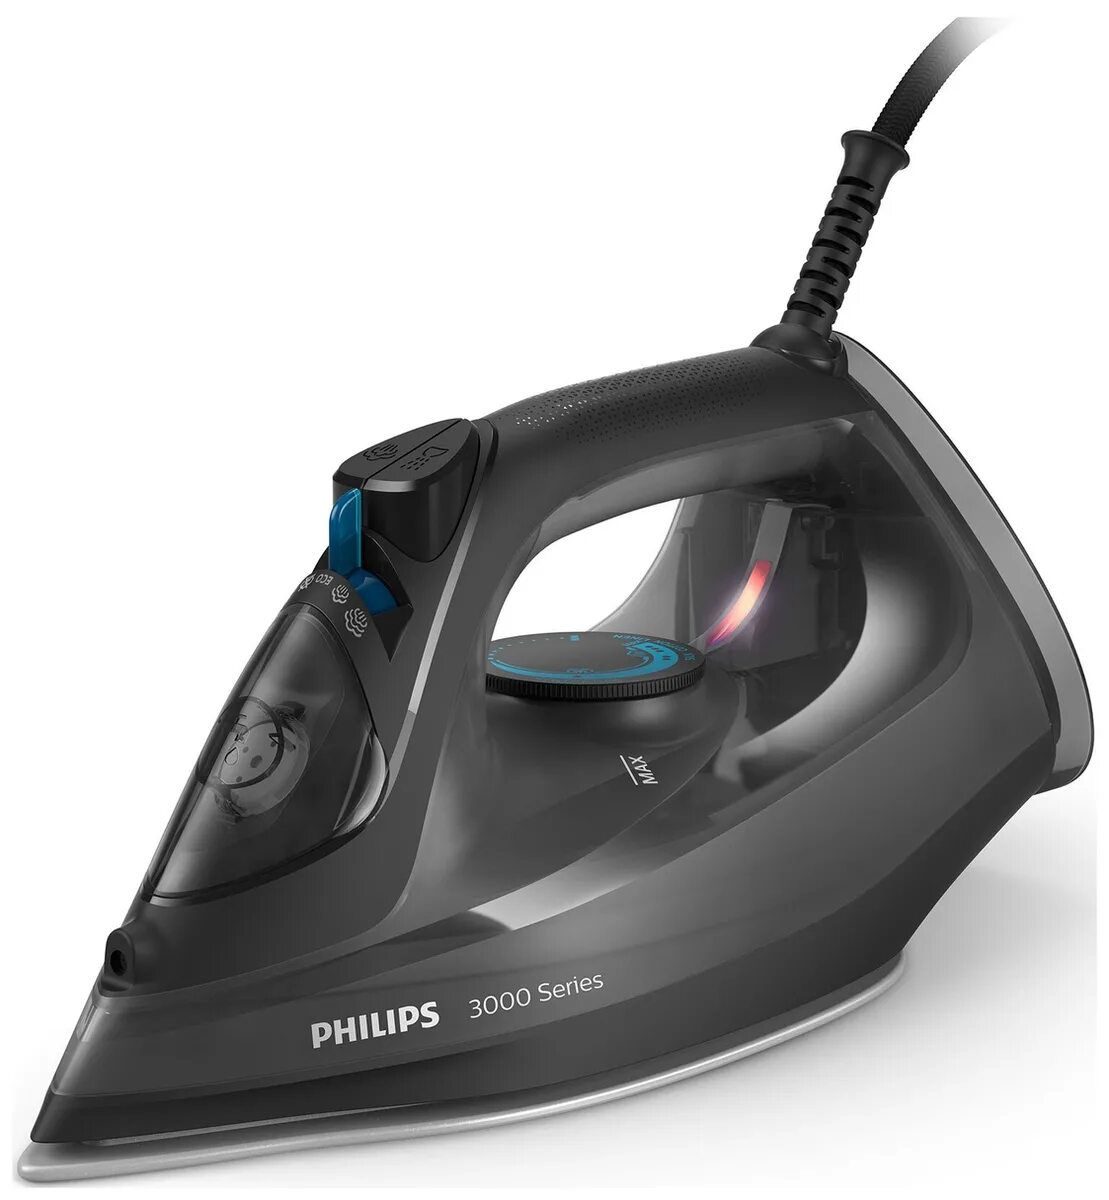 Утюг philips 3000 series. Утюг Philips dst3041/80. Утюг Филипс 3000. Утюг Philips dst3041/80 черный. Утюг Philips DST 3040.